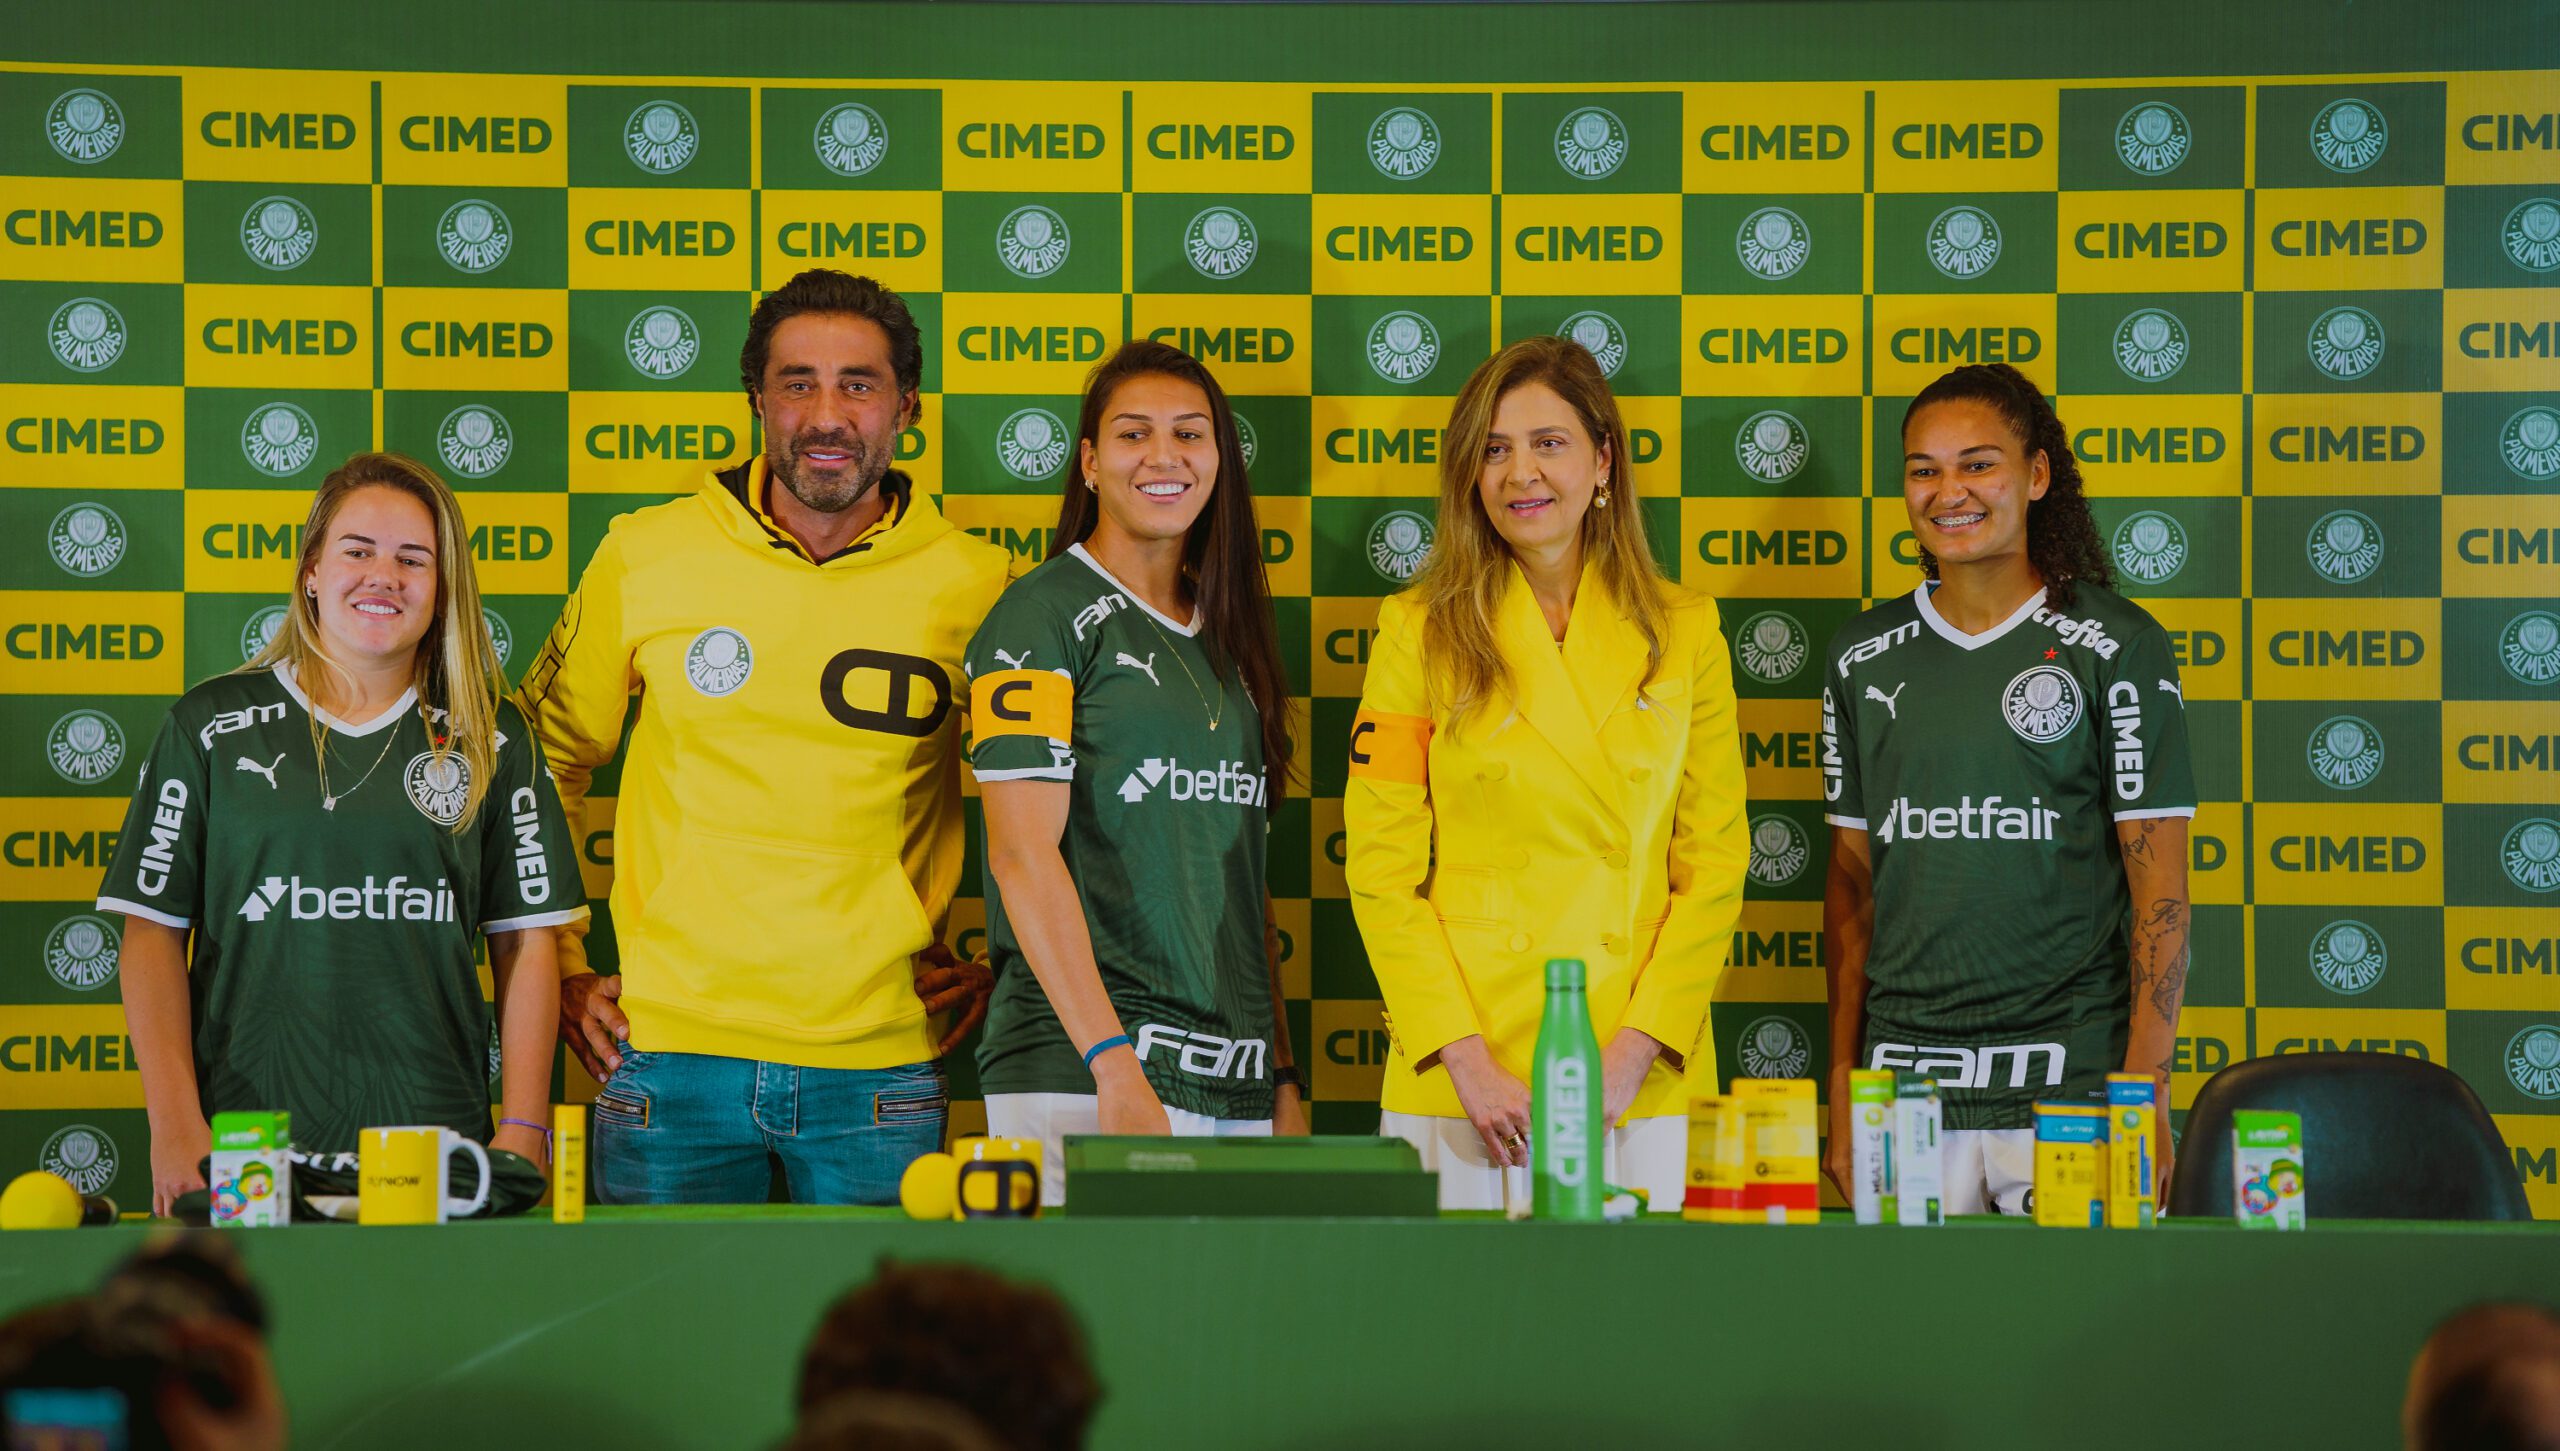 Cimed Palmeiras Patrocinio scaled